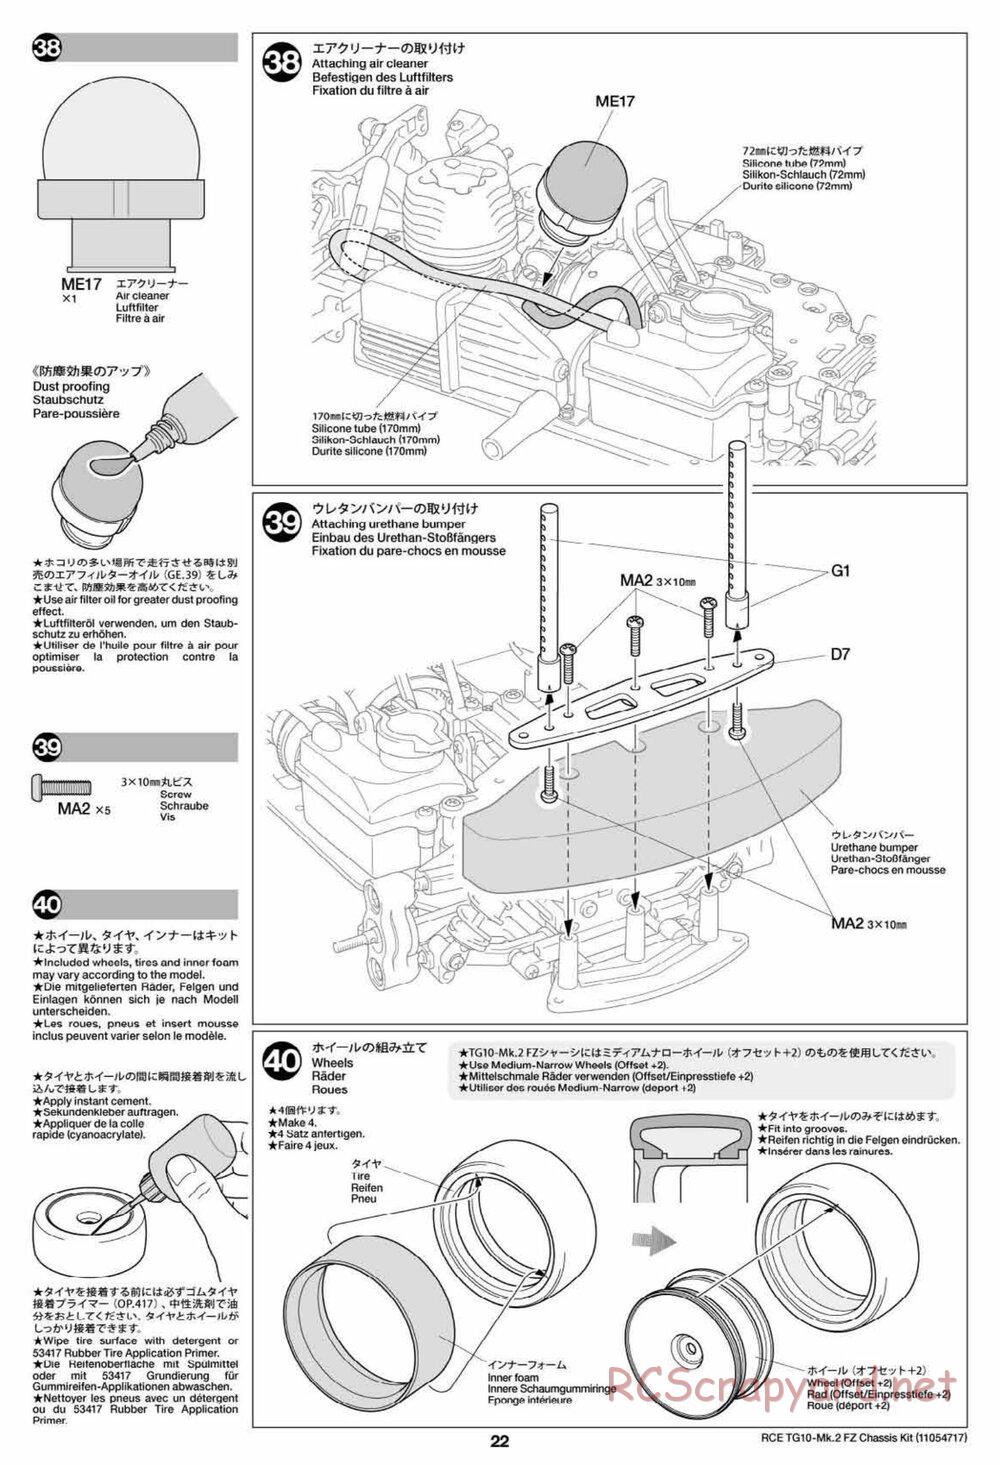 Tamiya - TG10 Mk.2 FZ Chassis - Manual - Page 22